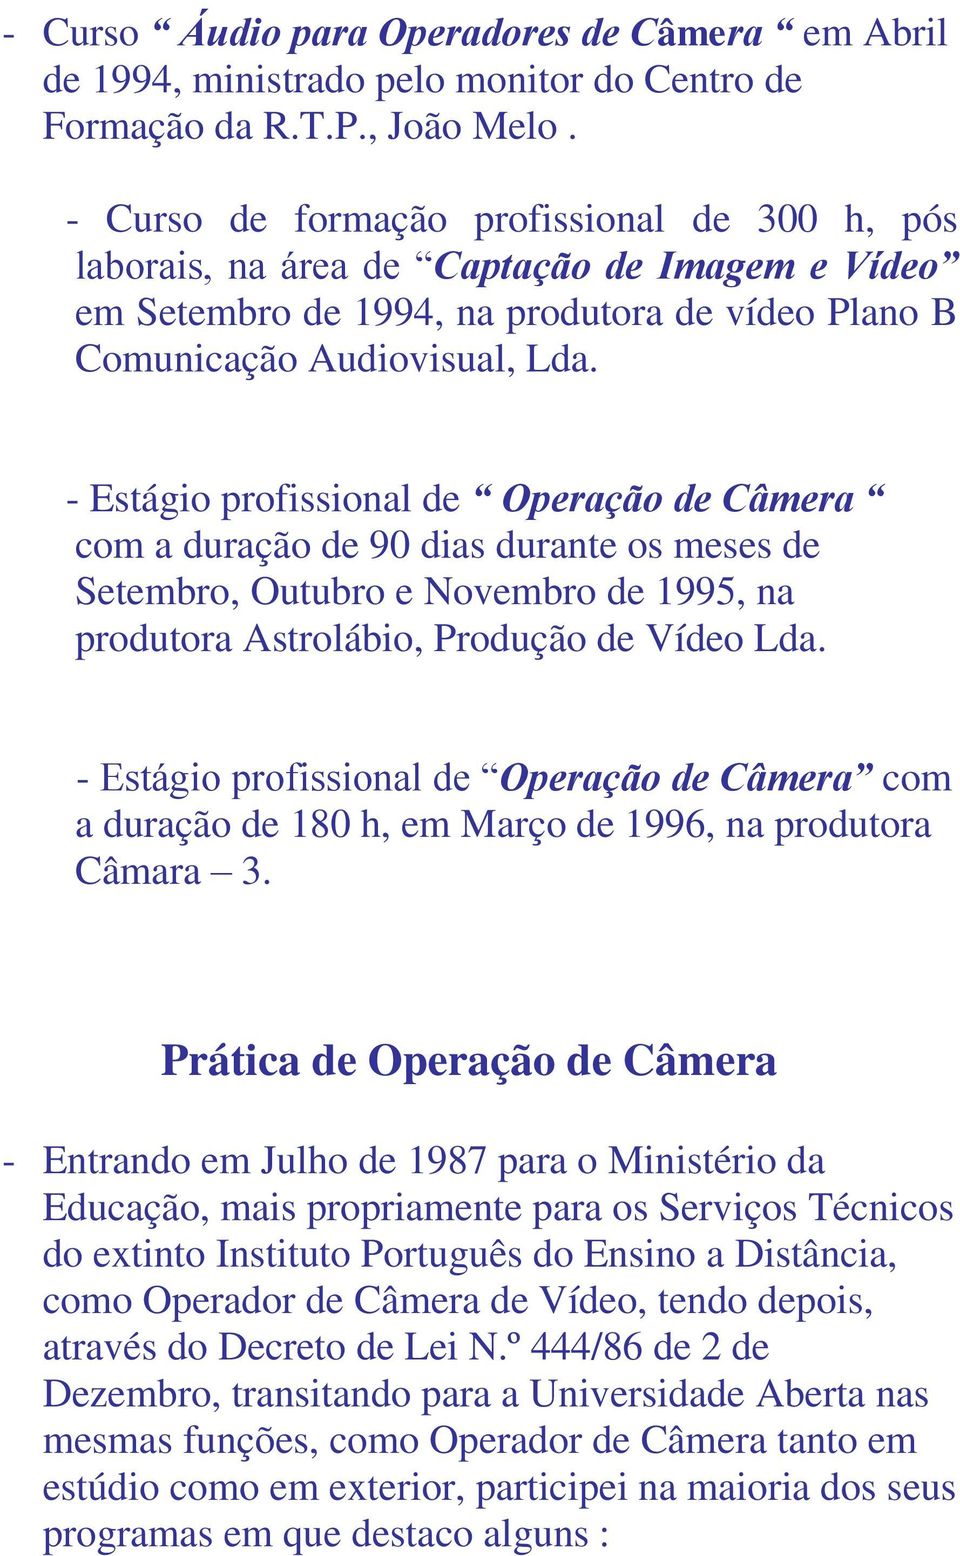 - Estágio profissional de Operação de Câmera com a duração de 90 dias durante os meses de Setembro, Outubro e Novembro de 1995, na produtora Astrolábio, Produção de Vídeo Lda.